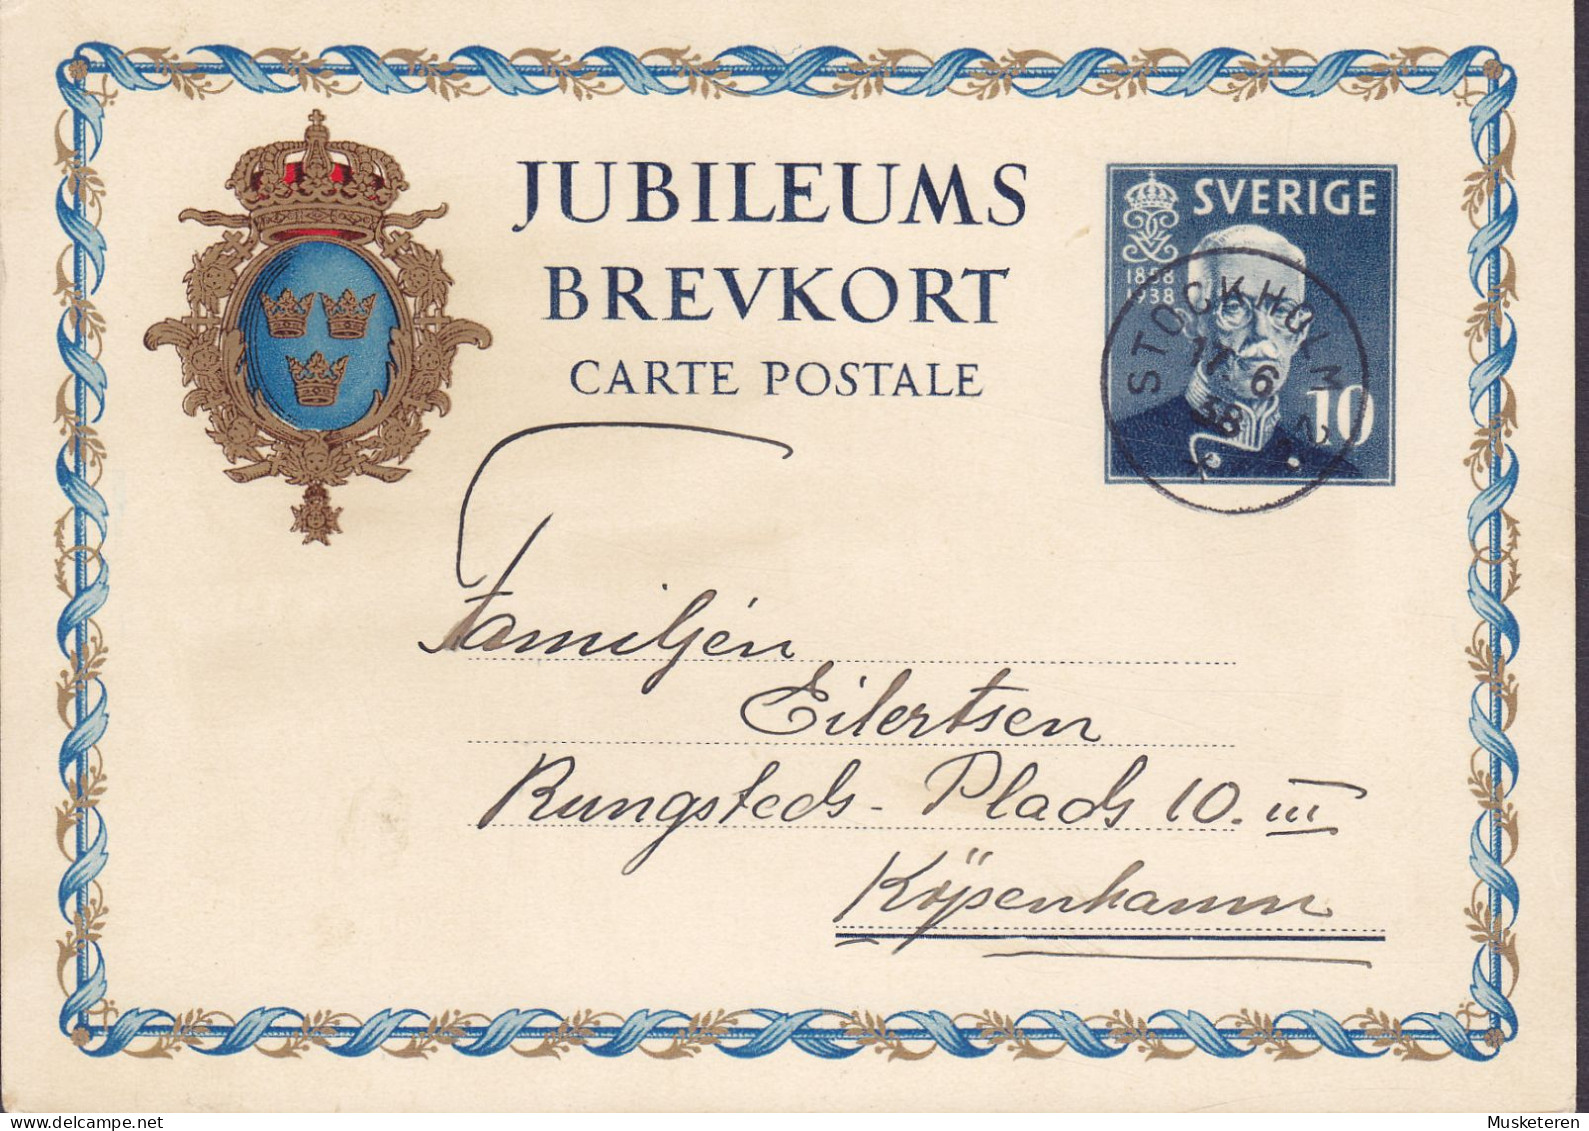 Sweden Postal Stationery Ganzsache Entier 10 Ø Jubileums Brevkort 1858-1938 STOCKHOLM 1938 KØBENHAVN Denmark - Interi Postali